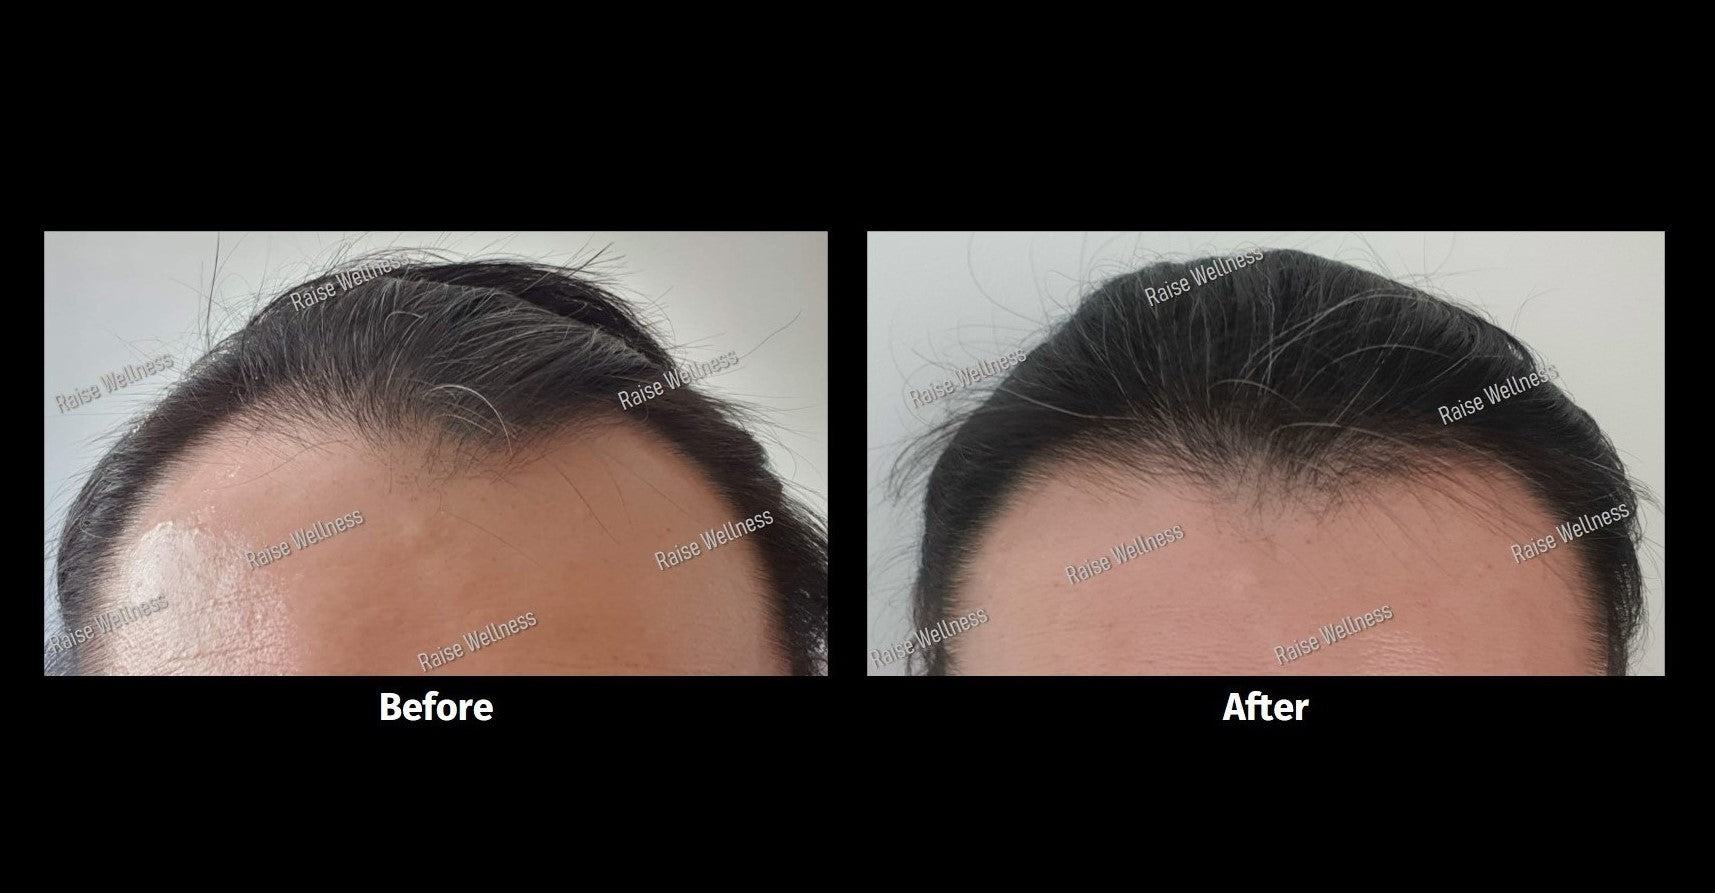 Fight hair loss, regain healthy hair growth